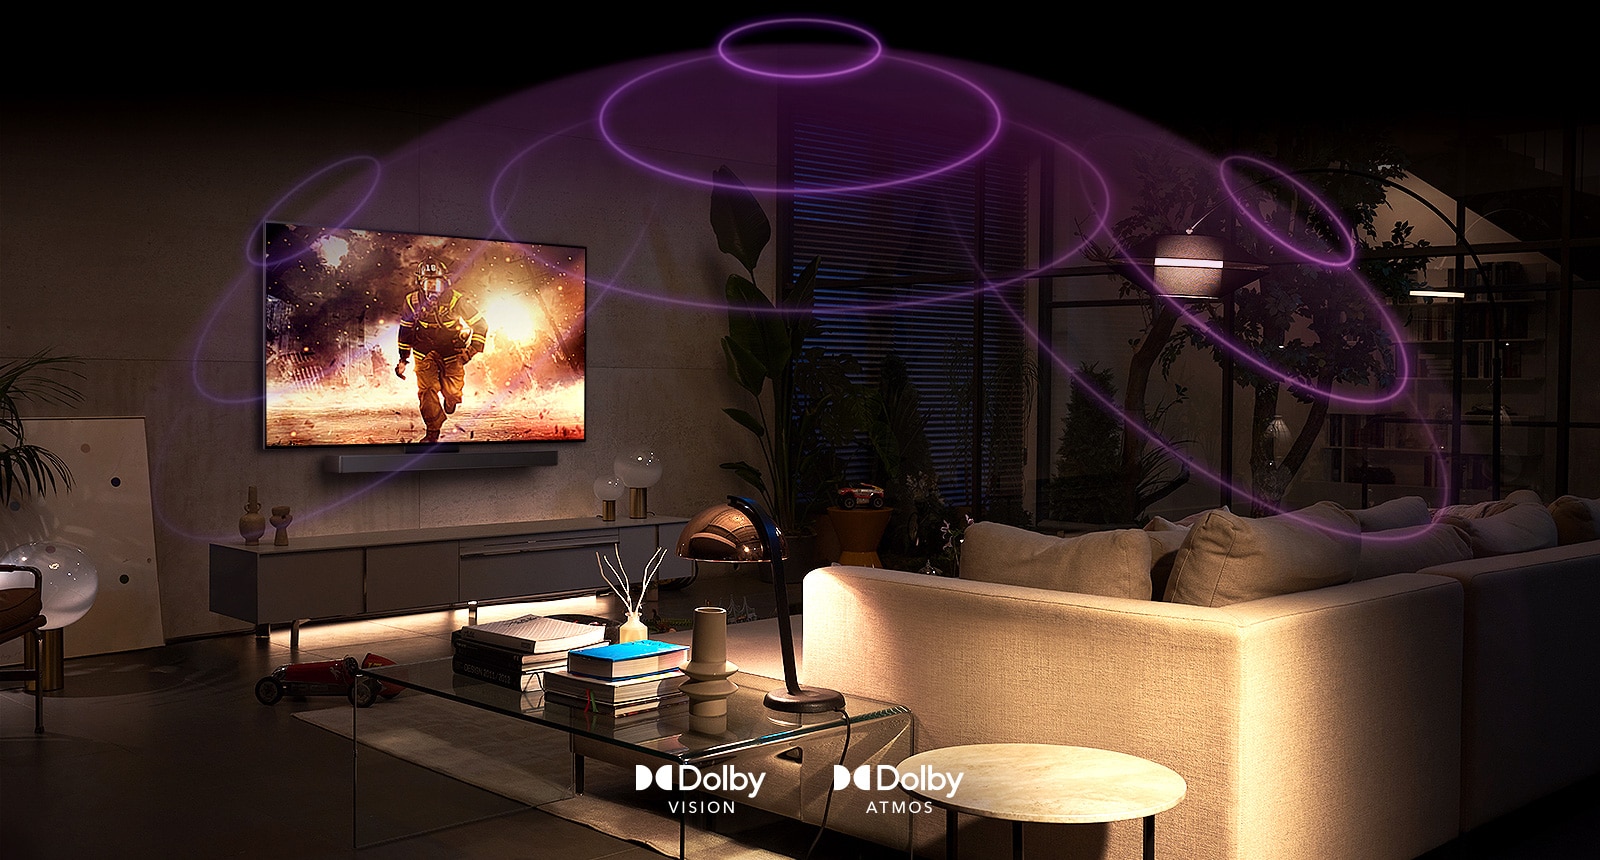 Slika televizora LG OLED u prostoriji, na njemu se reproducira akcijski film. Zvučni valovi stvaraju kupolu između kauča i televizora i tako kreiraju sveobuhvatan prostorni zvuk.